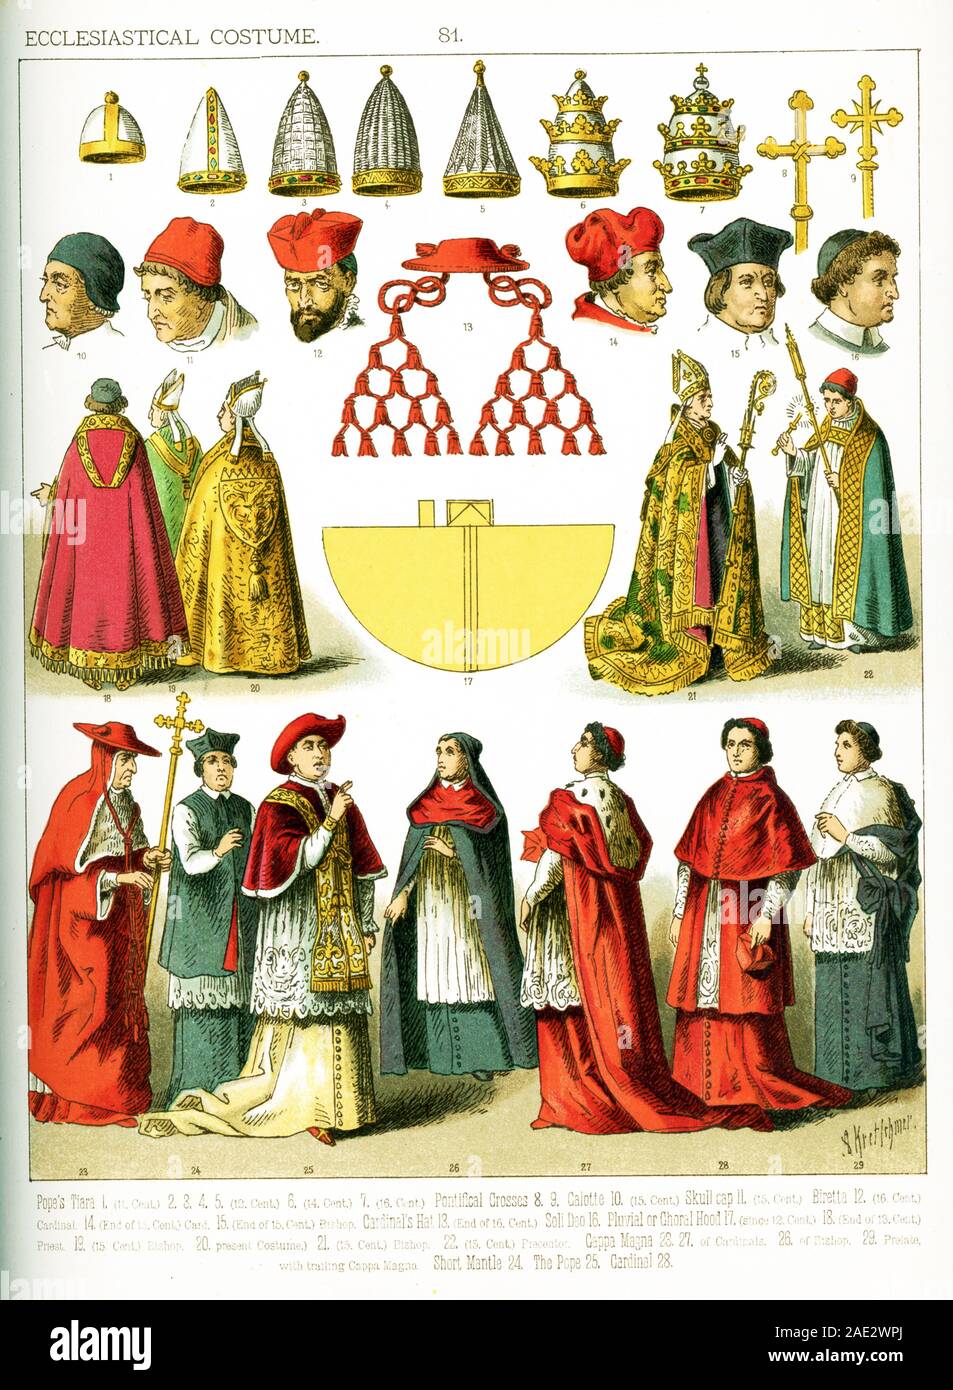 Les images ici sont toutes dotées d''Costume ecclésiastique, du 11e siècle au cours du xixe siècle. Ils sont de gauche à droite et de haut en bas : une tiare du pape du 11ème siècle, quatre statues du pape du 12ème siècle, une tiare du pape du 14ème siècle, une tiare du pape du 16ème siècle, deux croix pontificale, un calot du 15ème siècle, un chapeau de crâne du 15ème siècle, un biretta du 16e siècle, un chapeau de Cardinal à la fin du 16e siècle, un cardinal à la fin du 15ème siècle, un évêque à la fin du 15ème siècle, Soli Deo, d'un choral ou pluviales hood depuis t Banque D'Images